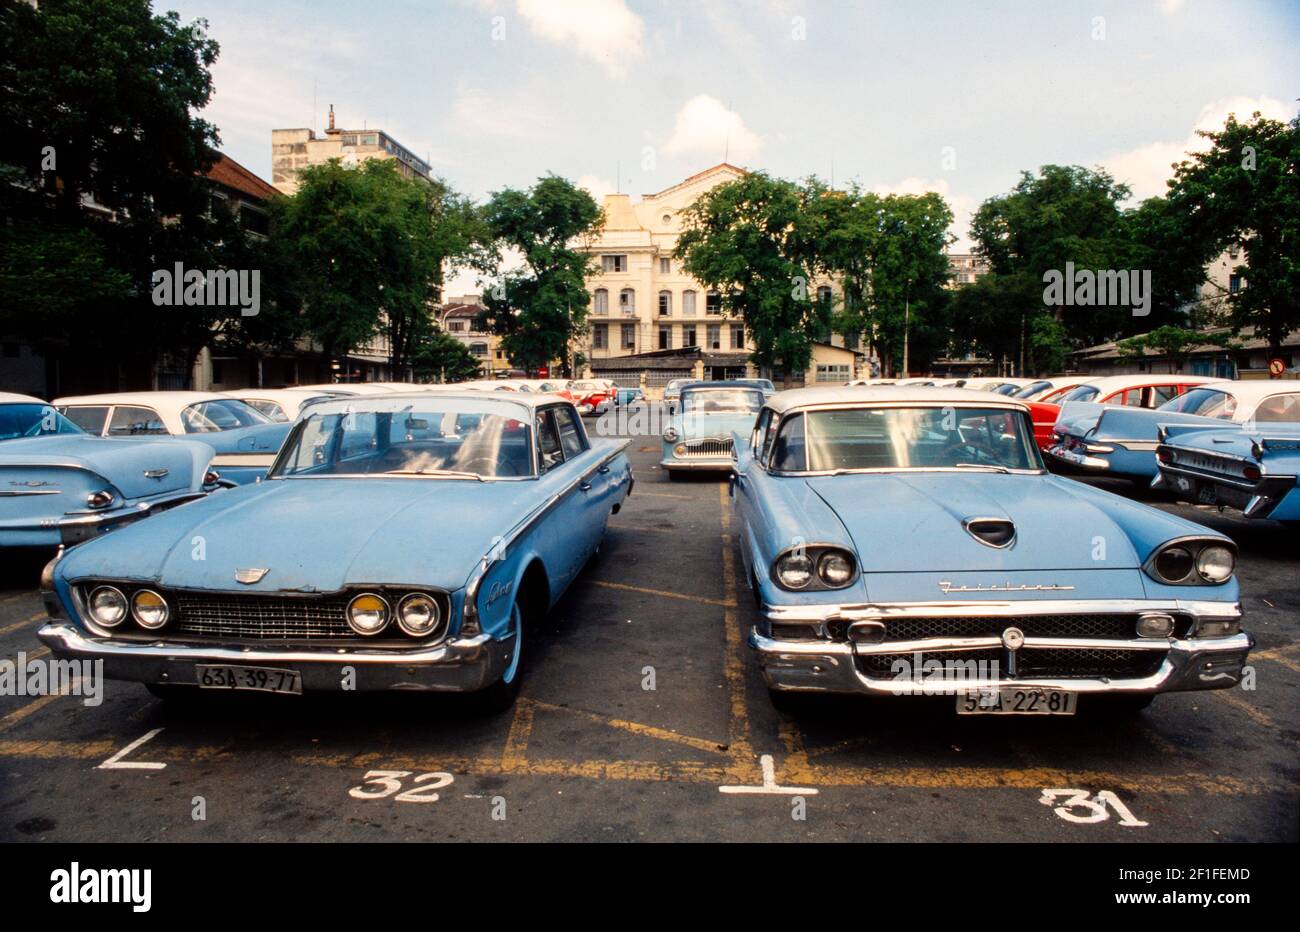 De grandes voitures américaines à forte consommation d'essence laissées derrière elles après la guerre du Vietnam, Ho Chi Minh ville, Vietnam, juin 1980 Banque D'Images